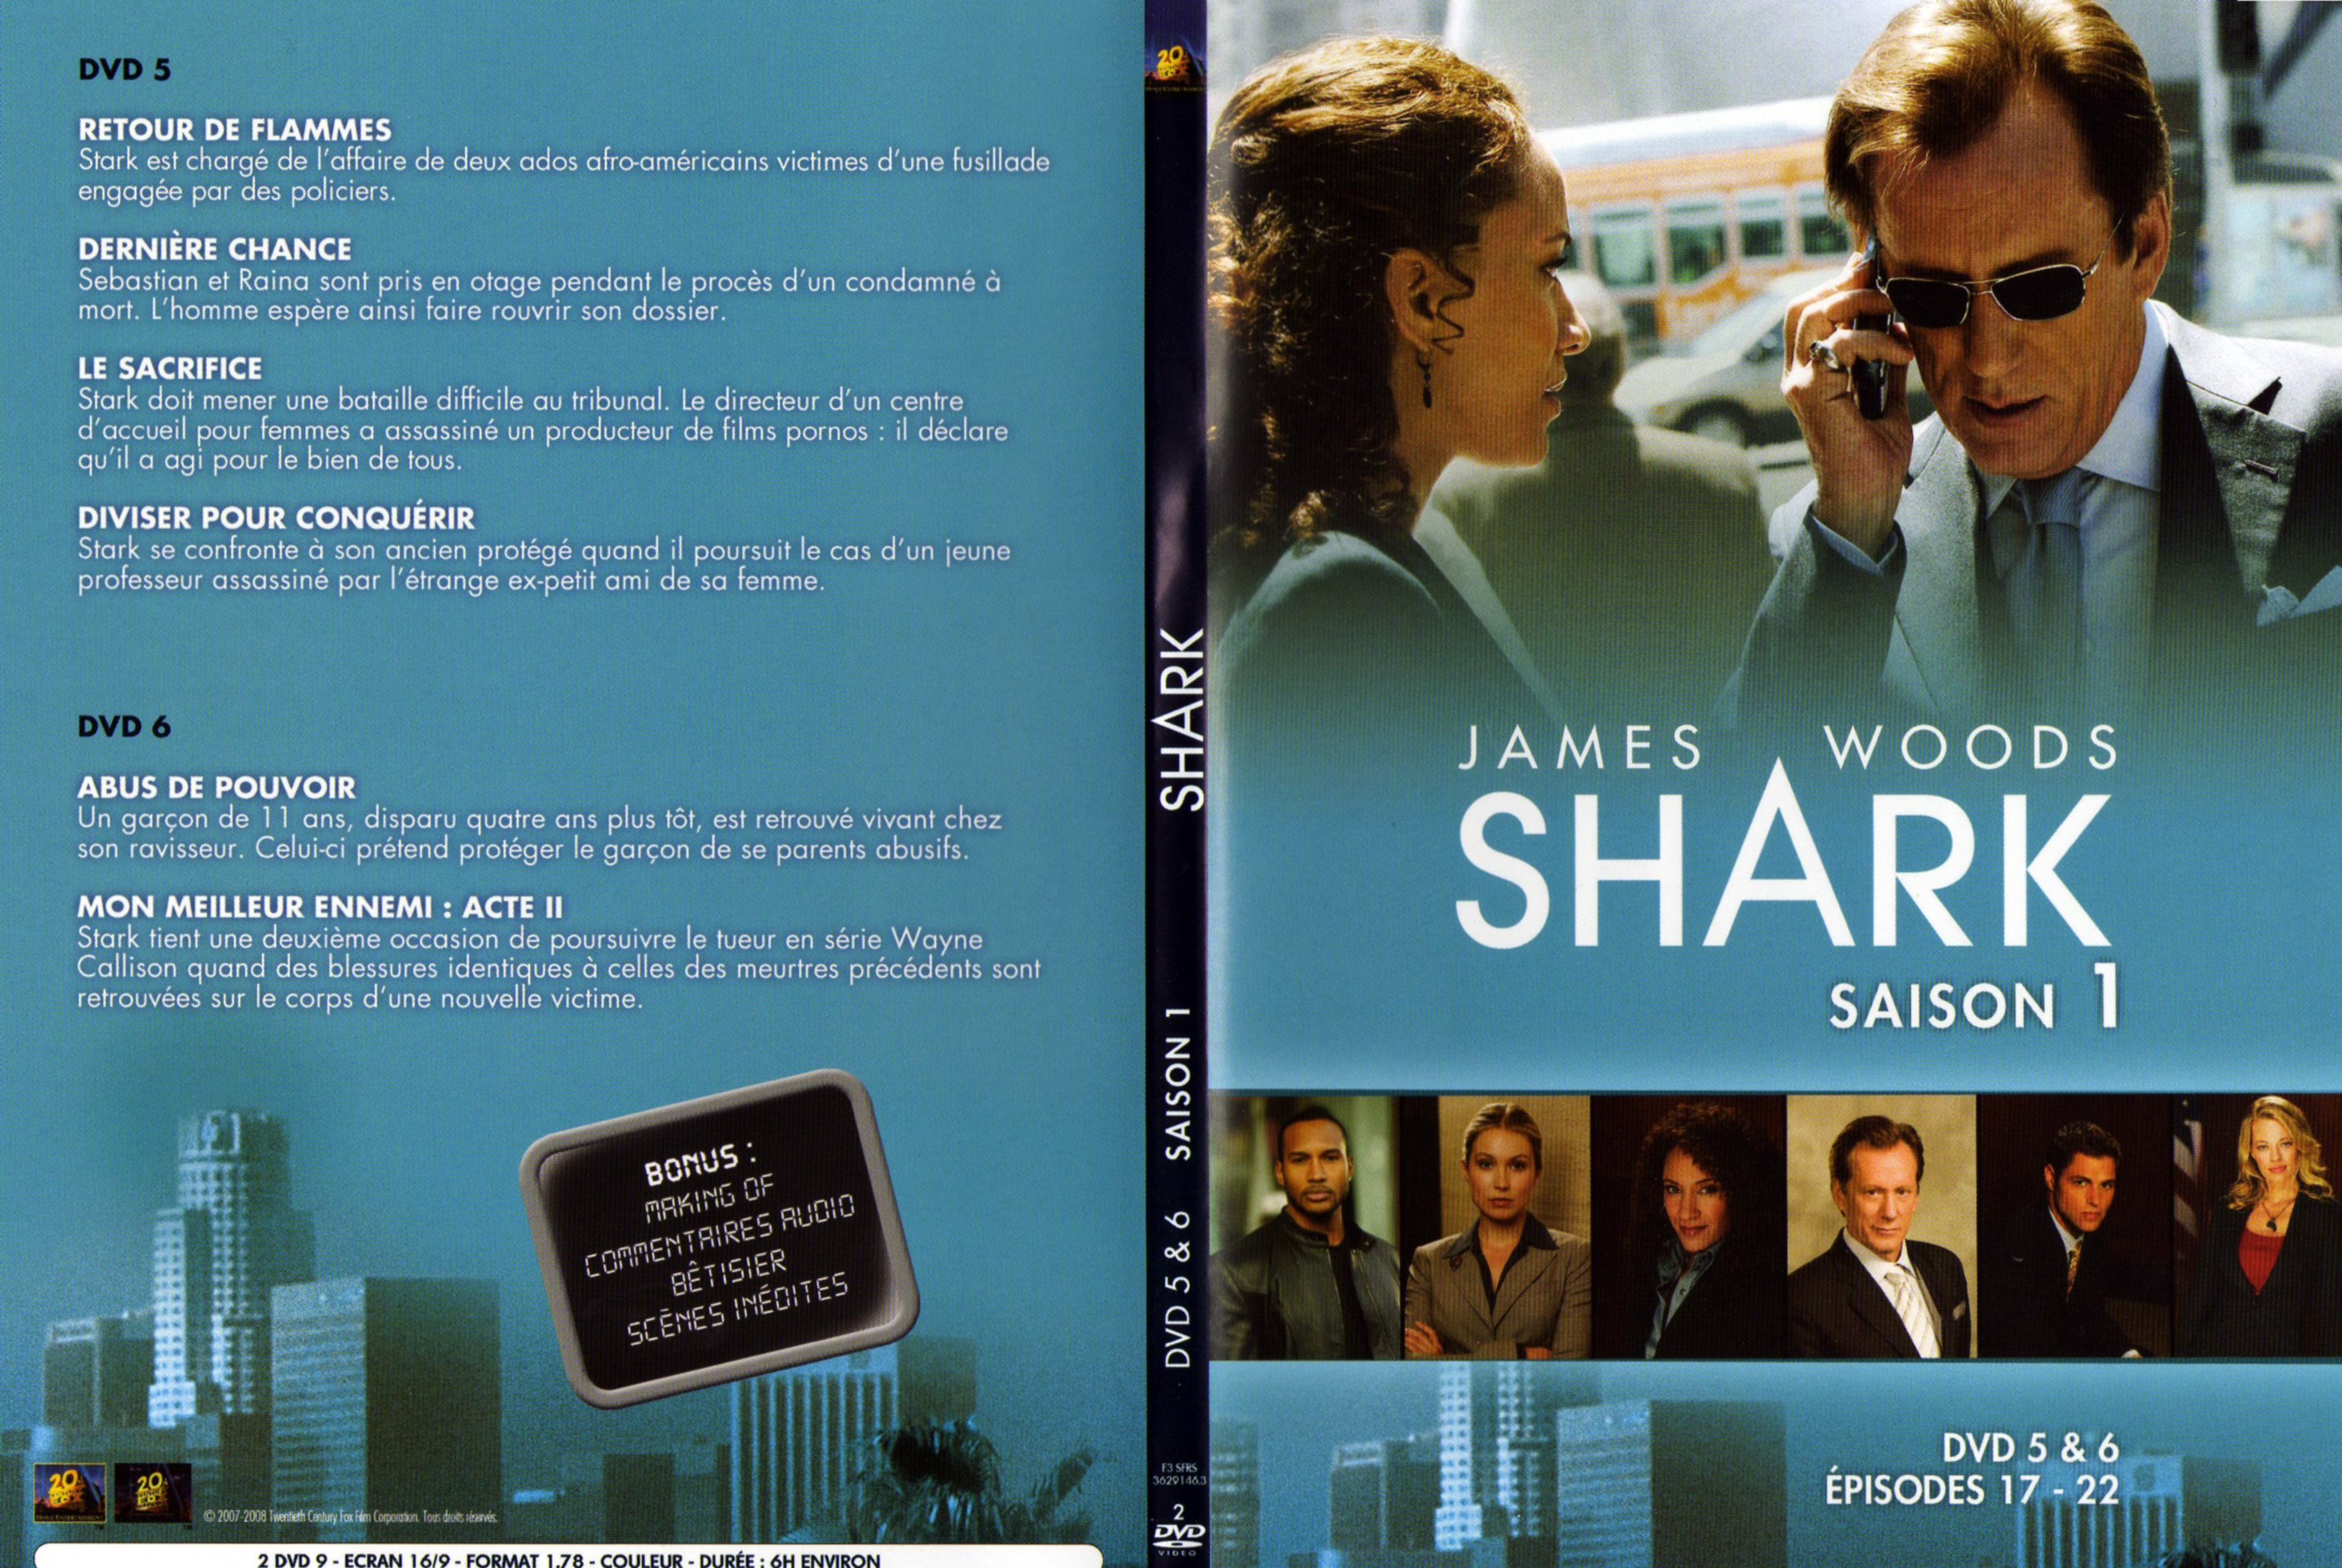 Jaquette DVD Shark Saison 1 DVD 3